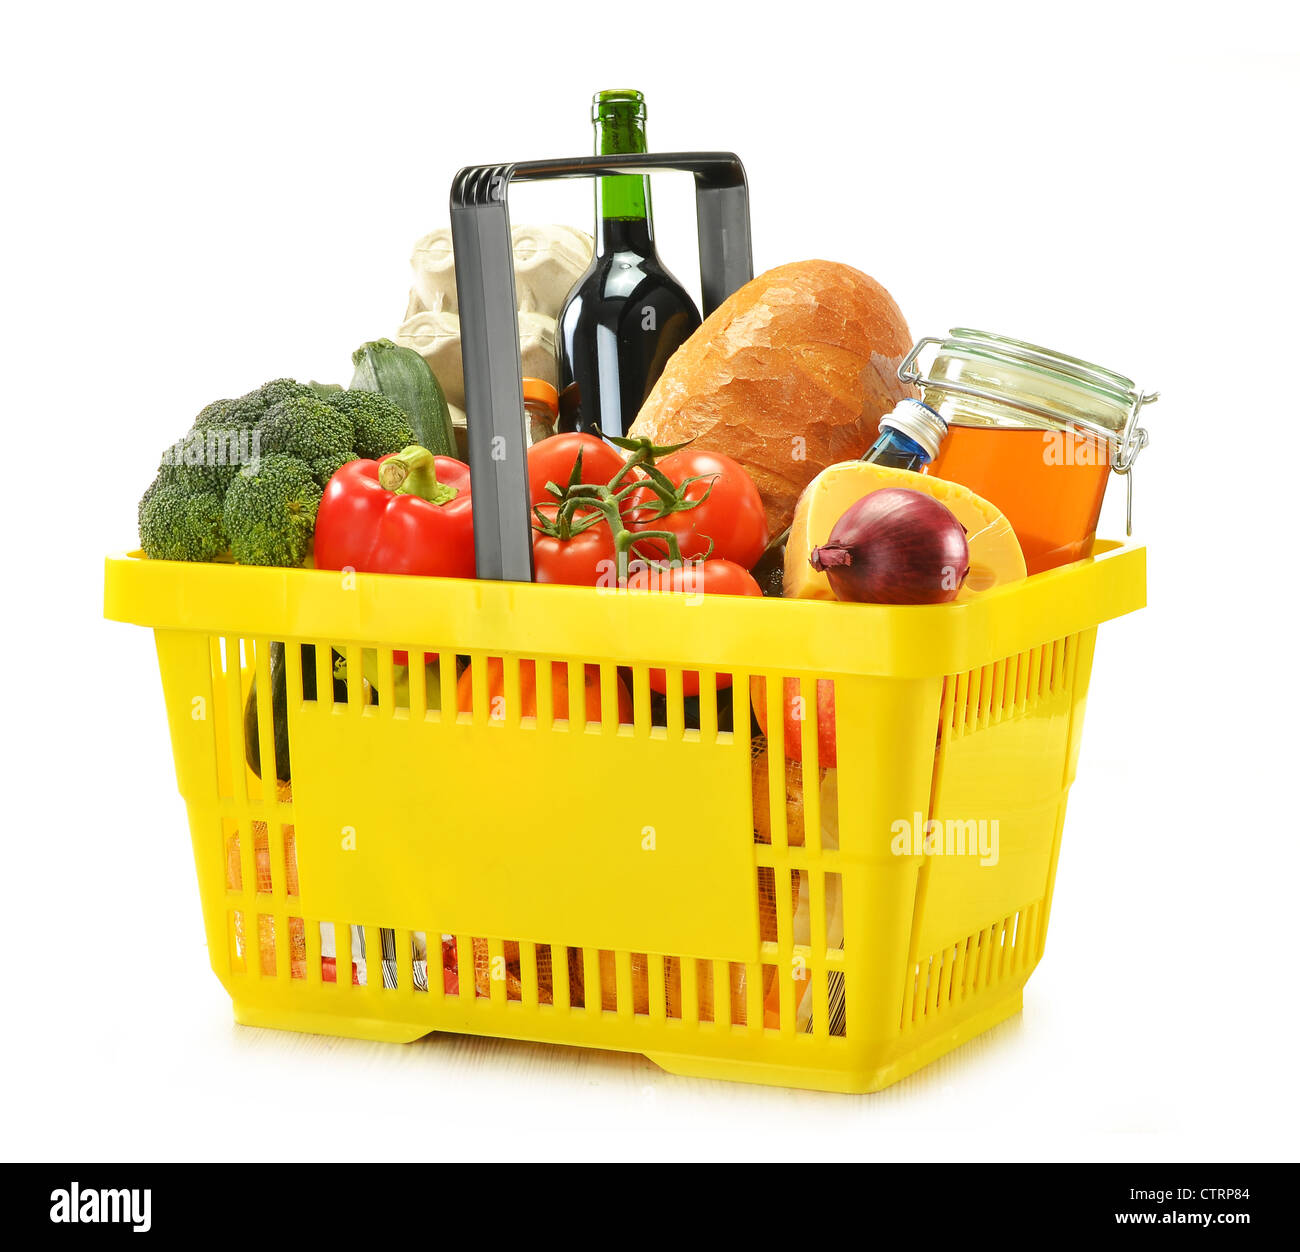 Paket] Einkaufskorb Kunststoff versch Farben Korb Lebensmittelkauf